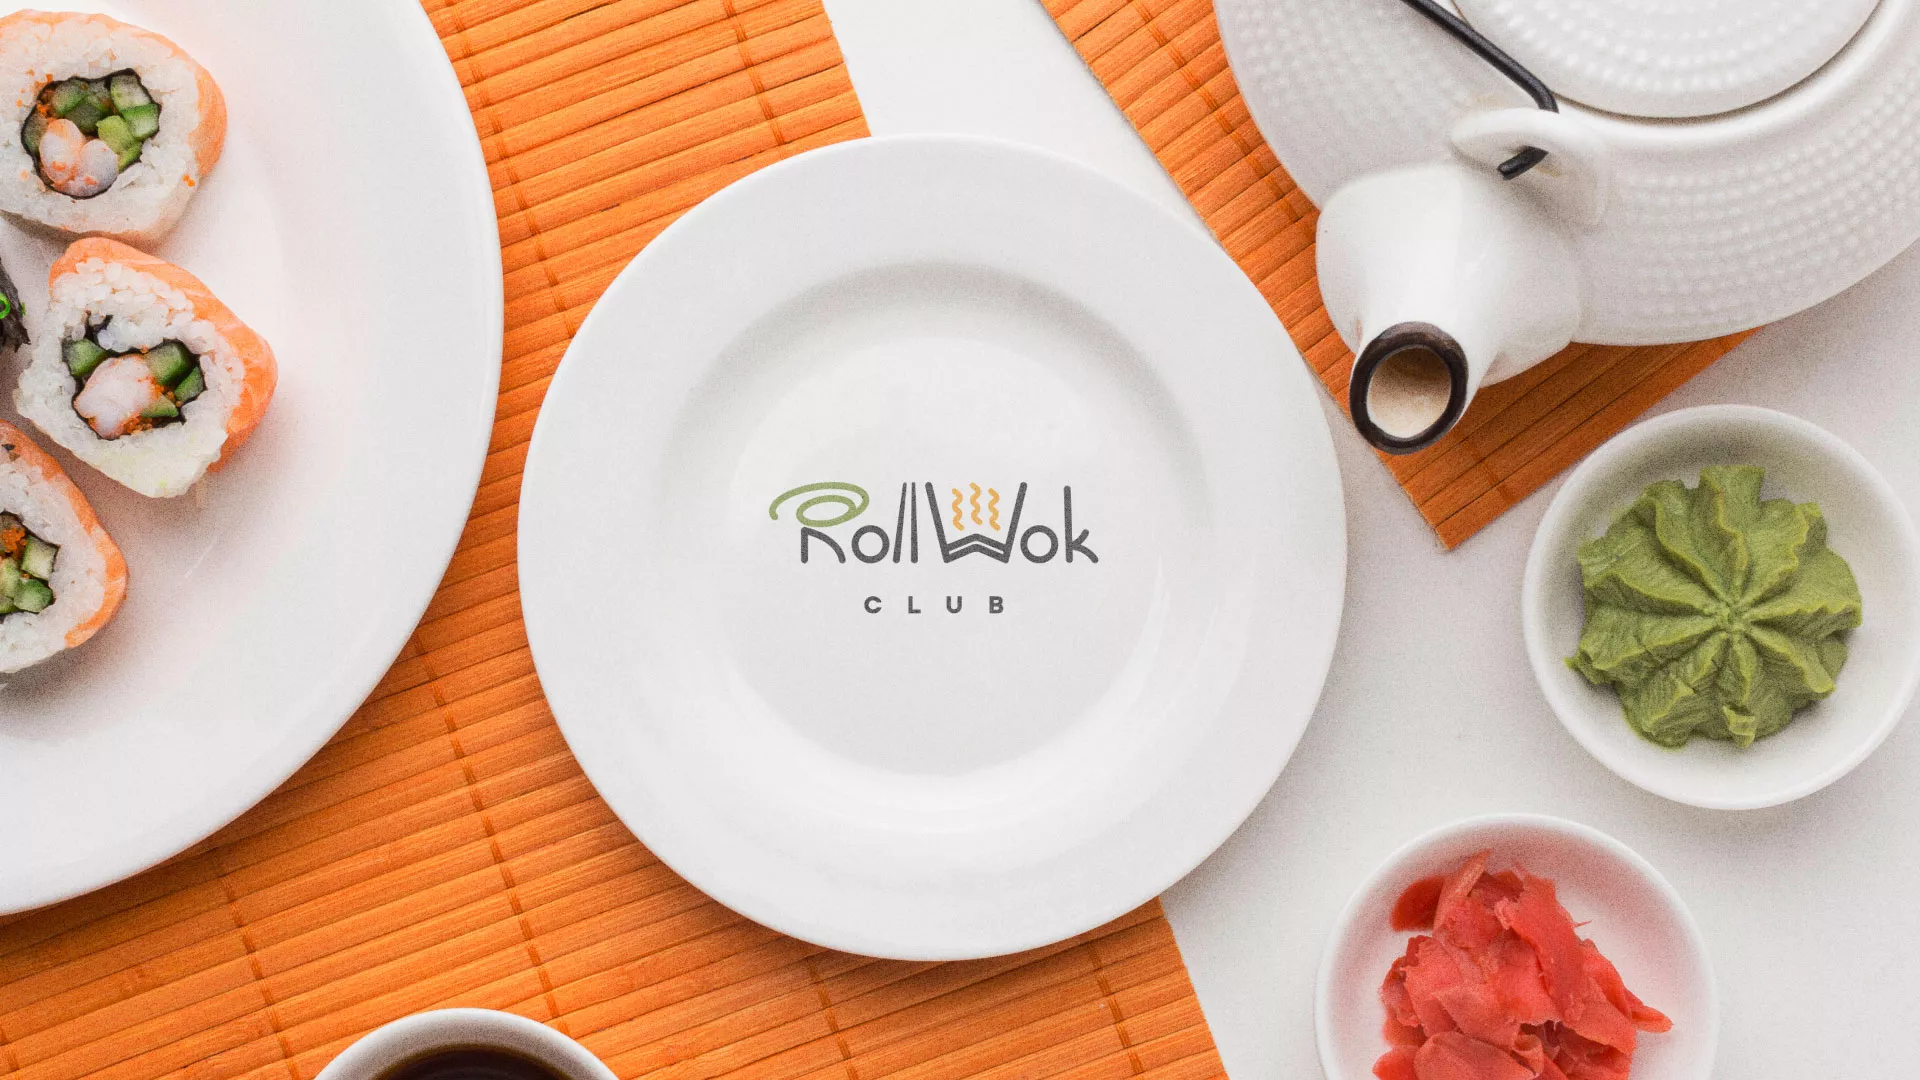 Разработка логотипа и фирменного стиля суши-бара «Roll Wok Club» в Сельцо